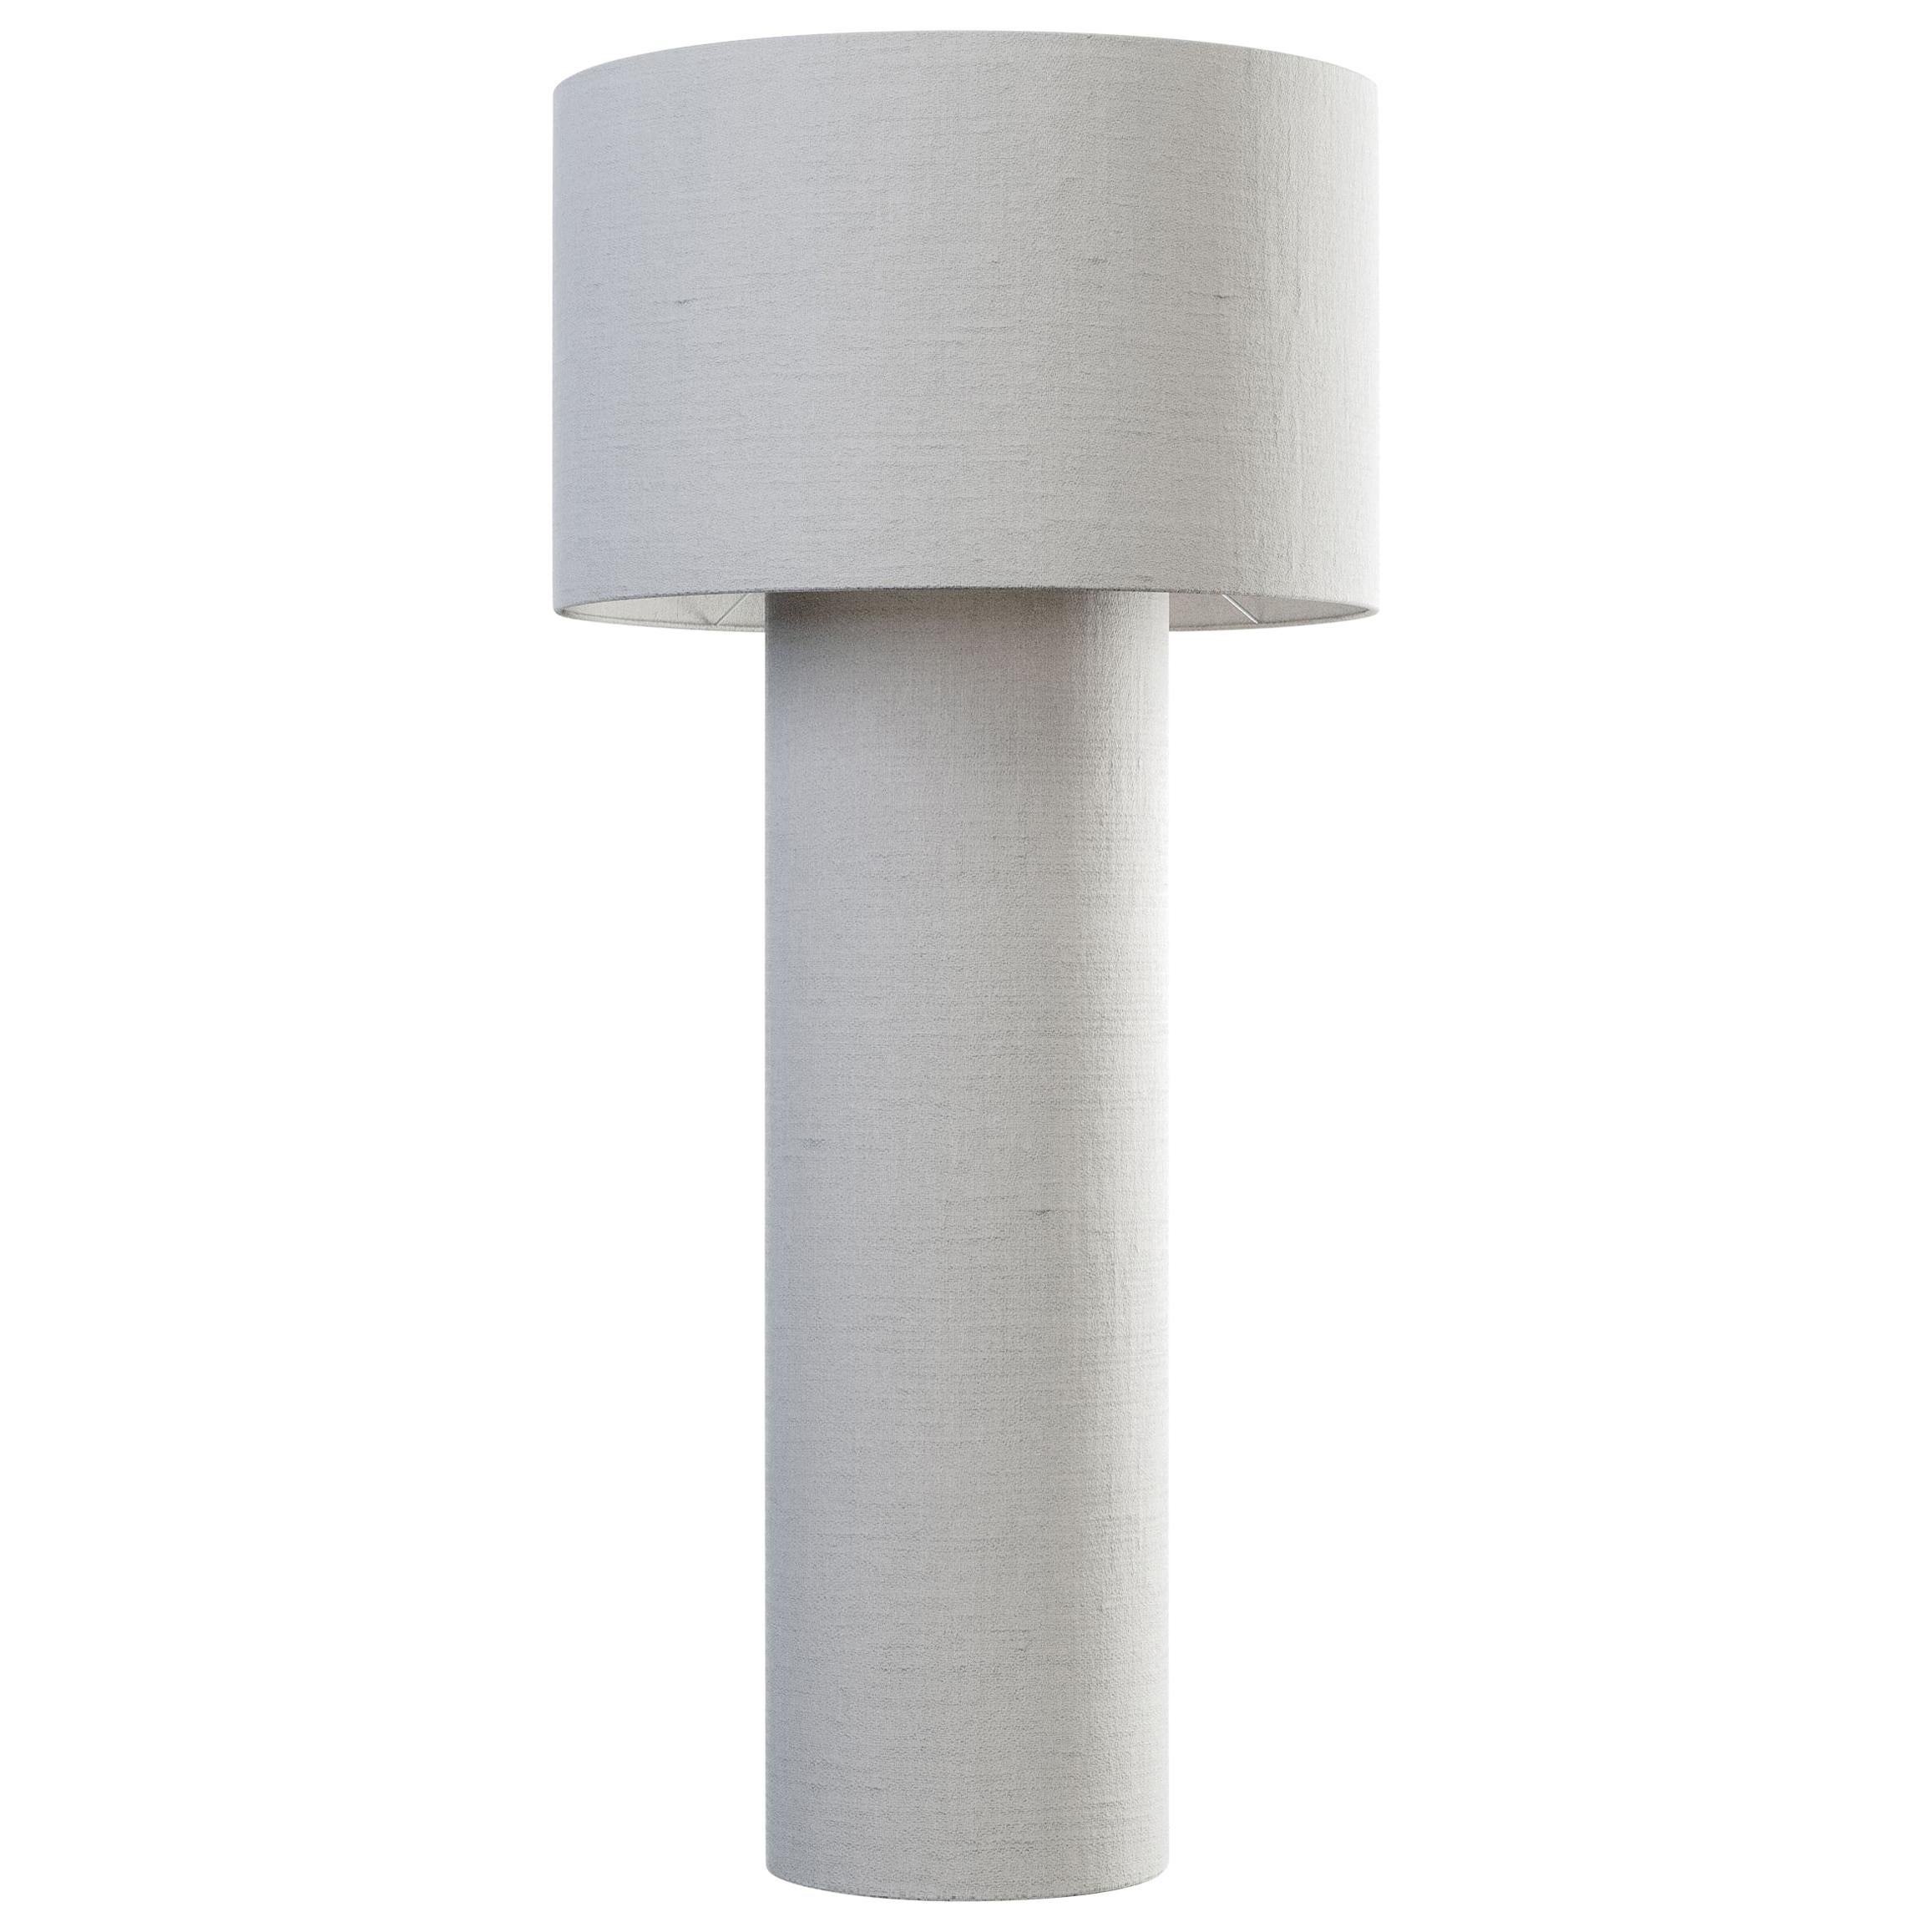 Pipe Medium Floor Lamp in White Diffuser by Diesel Living